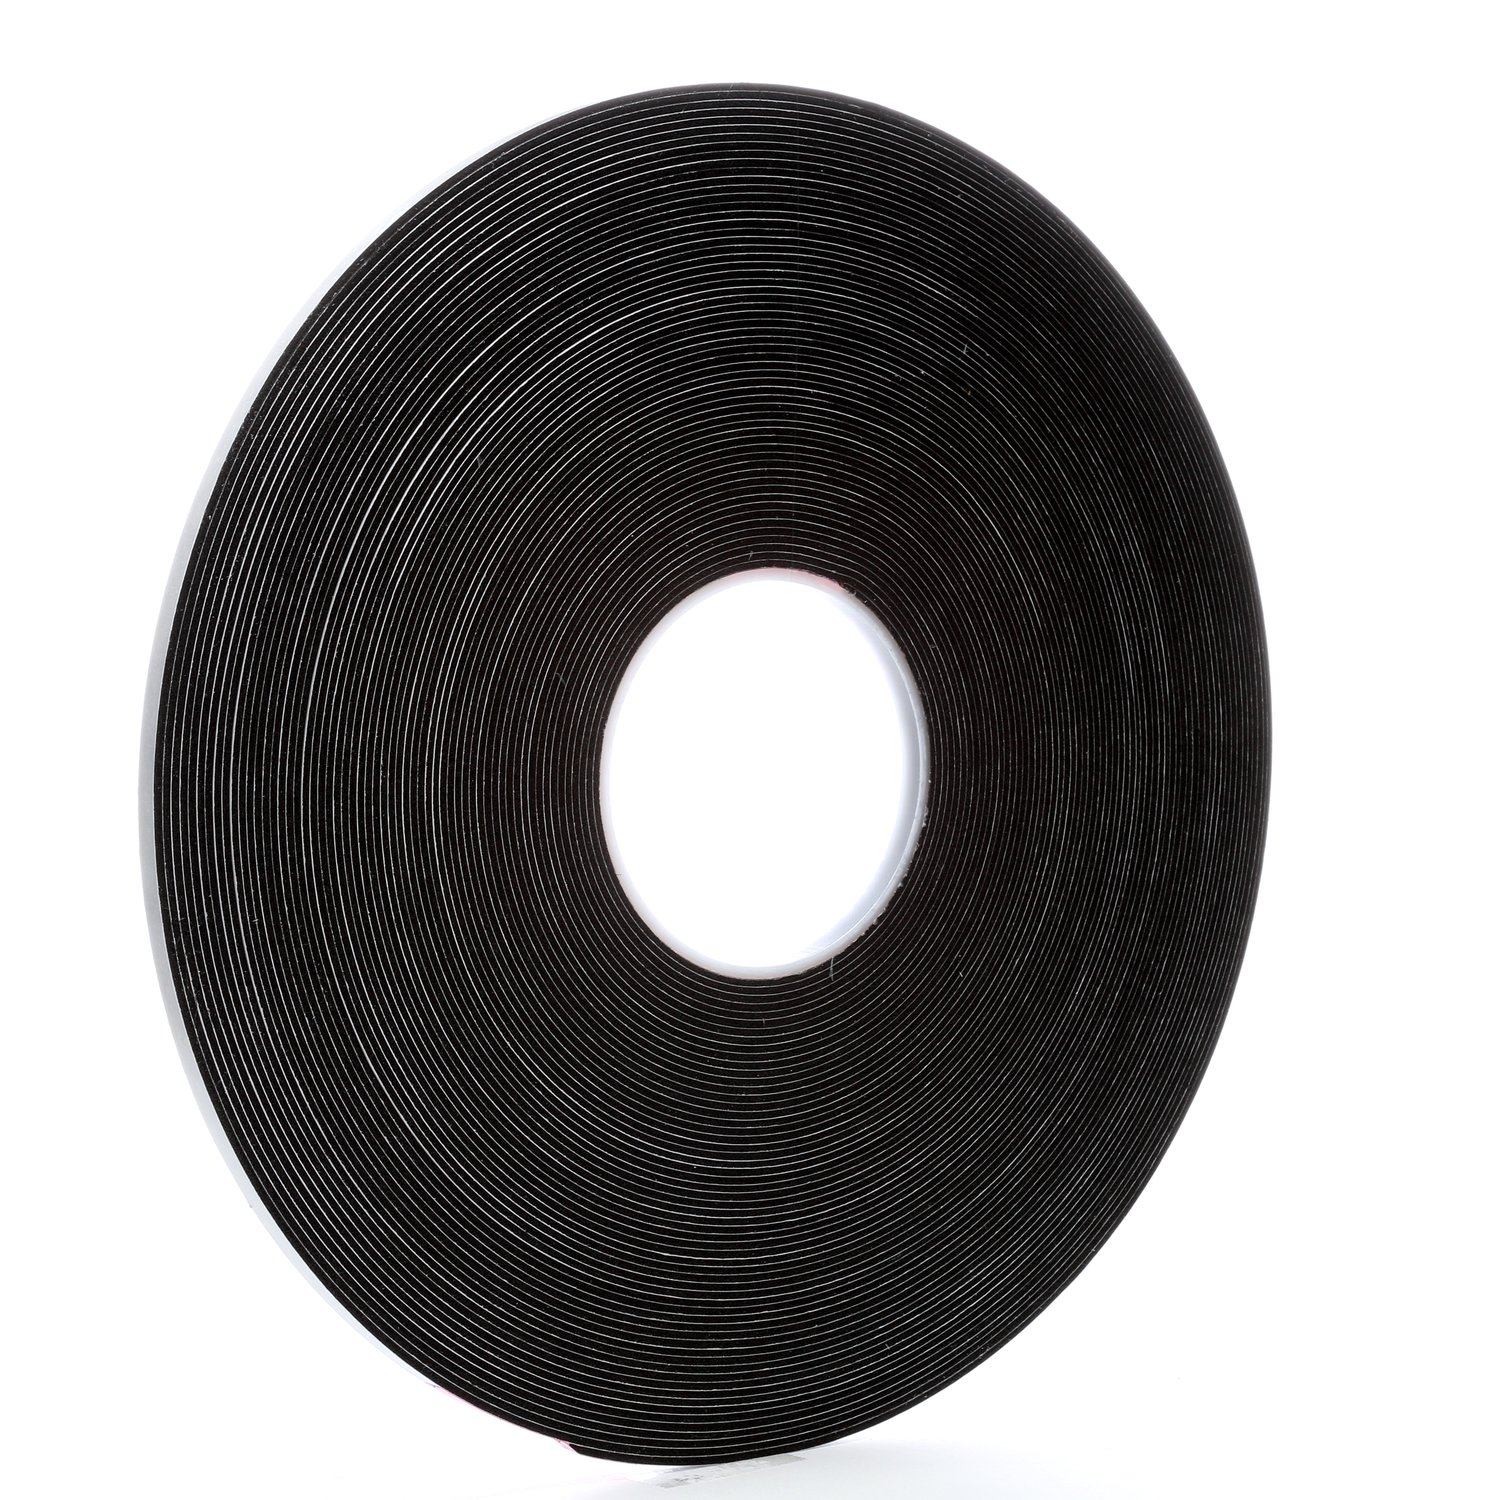 7000028661 - 3M Vinyl Foam Tape 4516, Black, 1/4 in x 36 yd, 62 mil, 36 rolls per
case